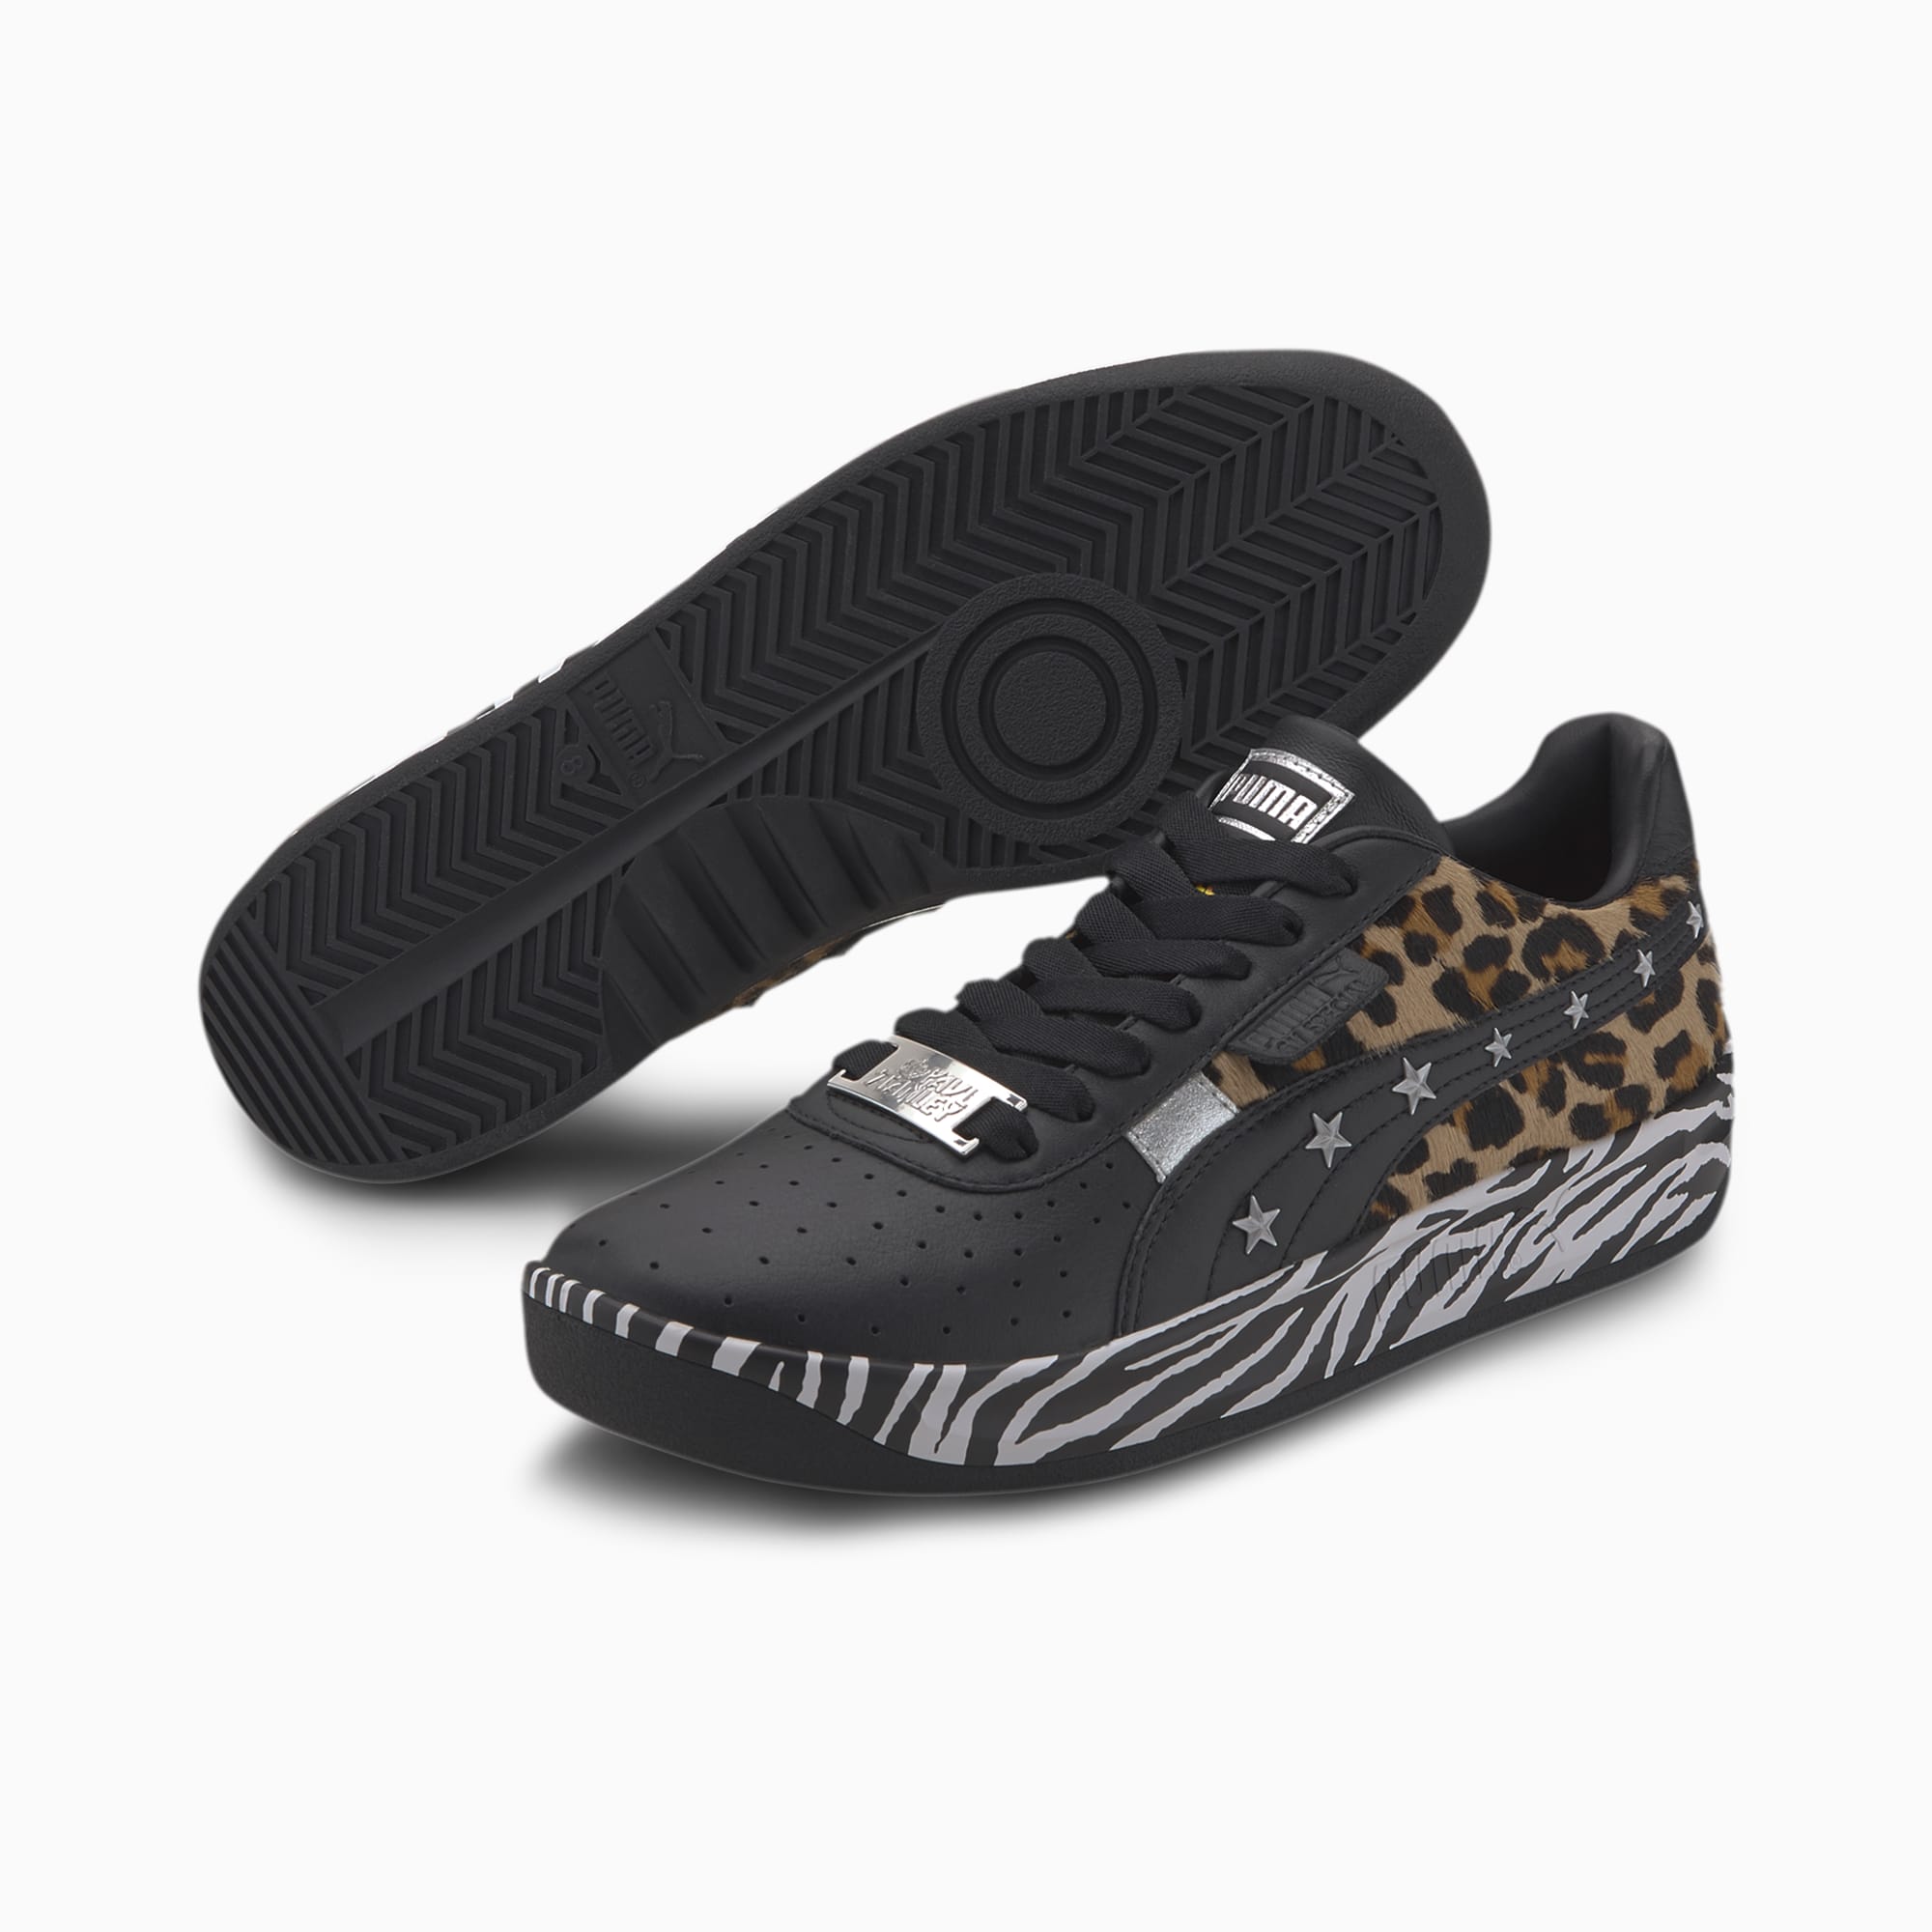 puma zebra shoes